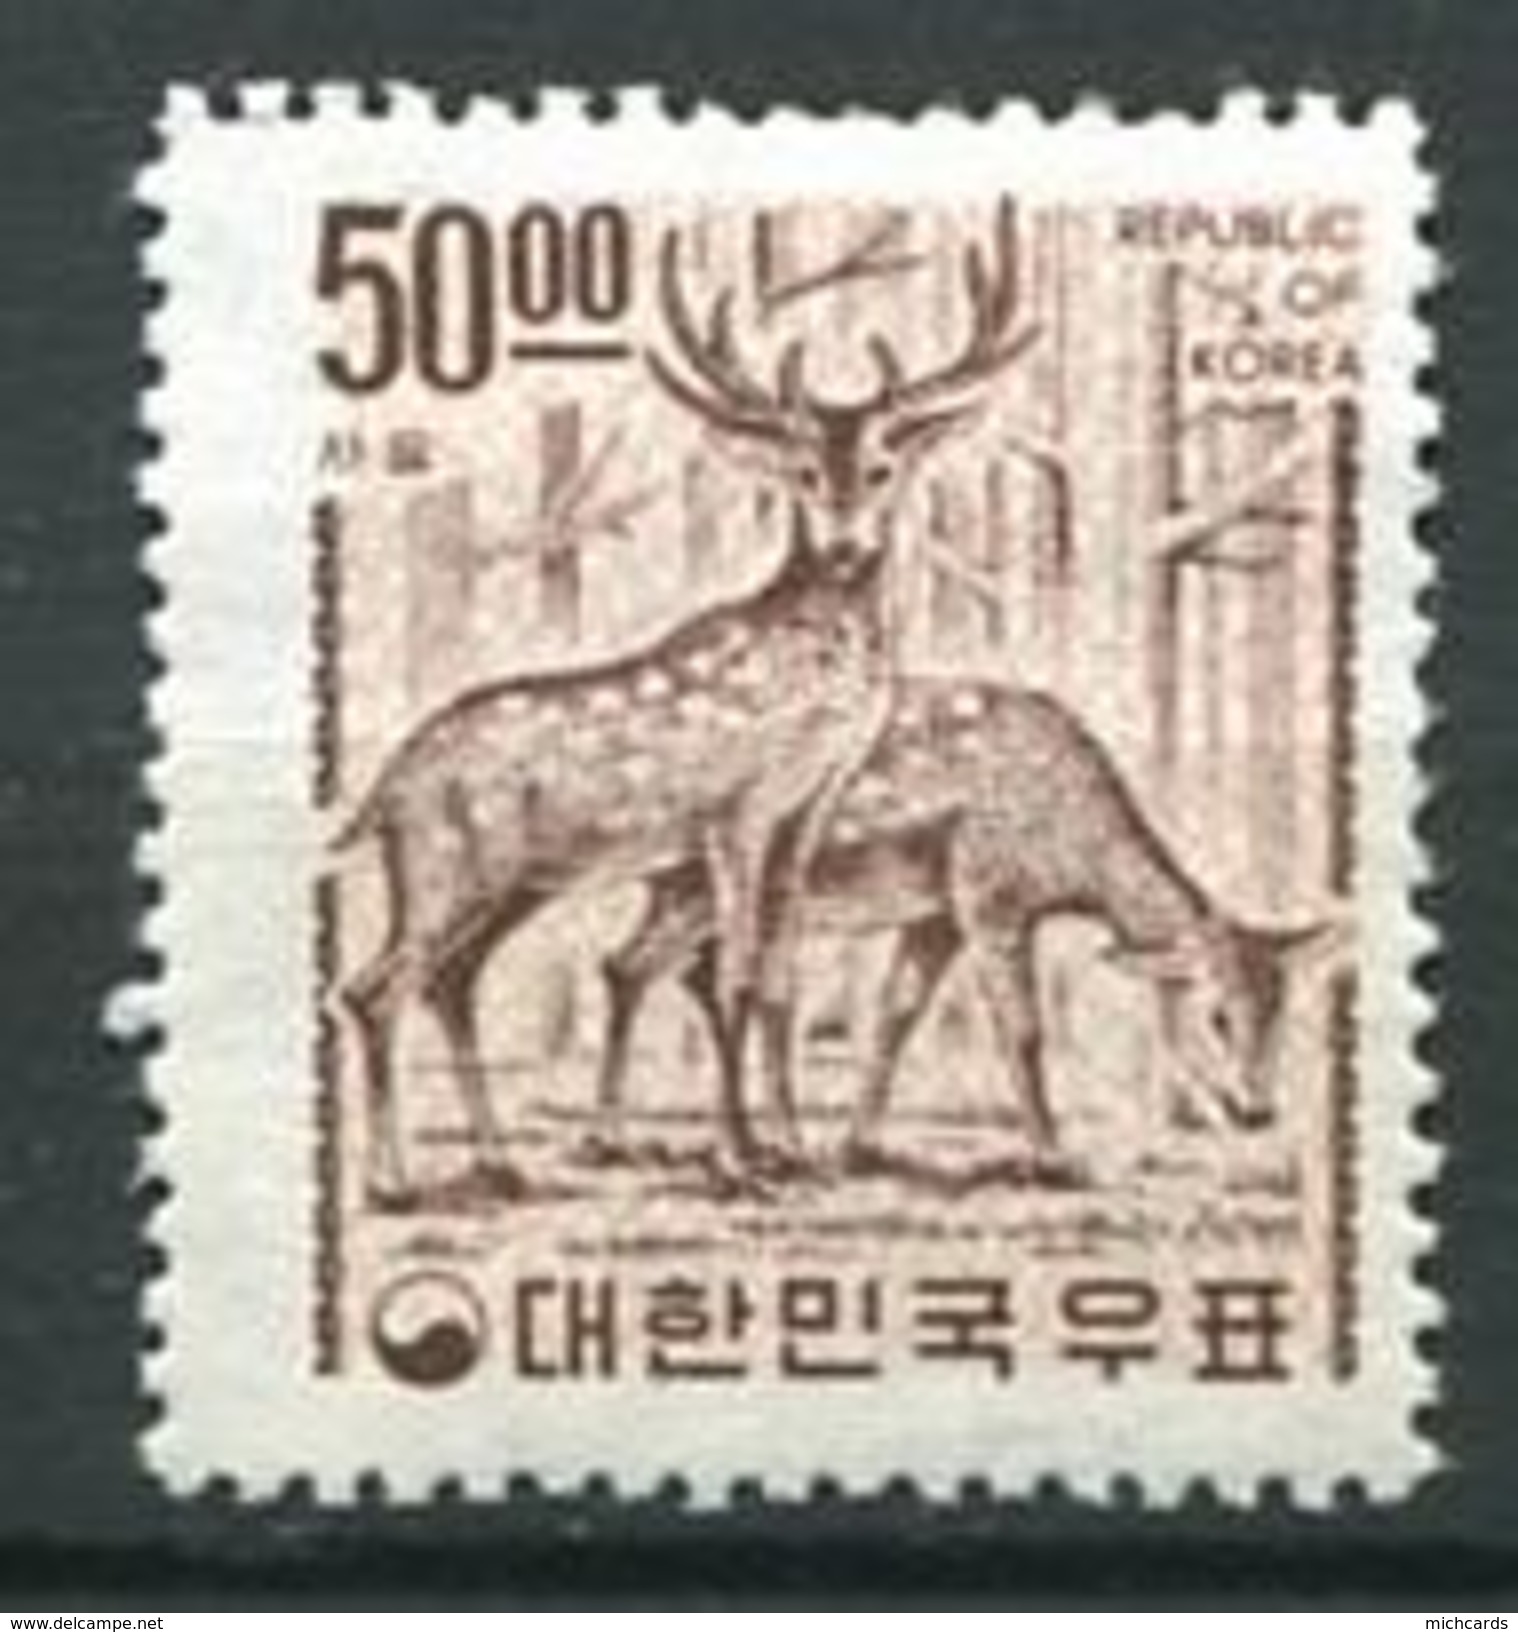 207 COREE SUD 1967 - Yvert 473 Decentre A Droite - Cerf - Neuf ** (MNH) Sans Trace De Charniere - Corea Del Sur